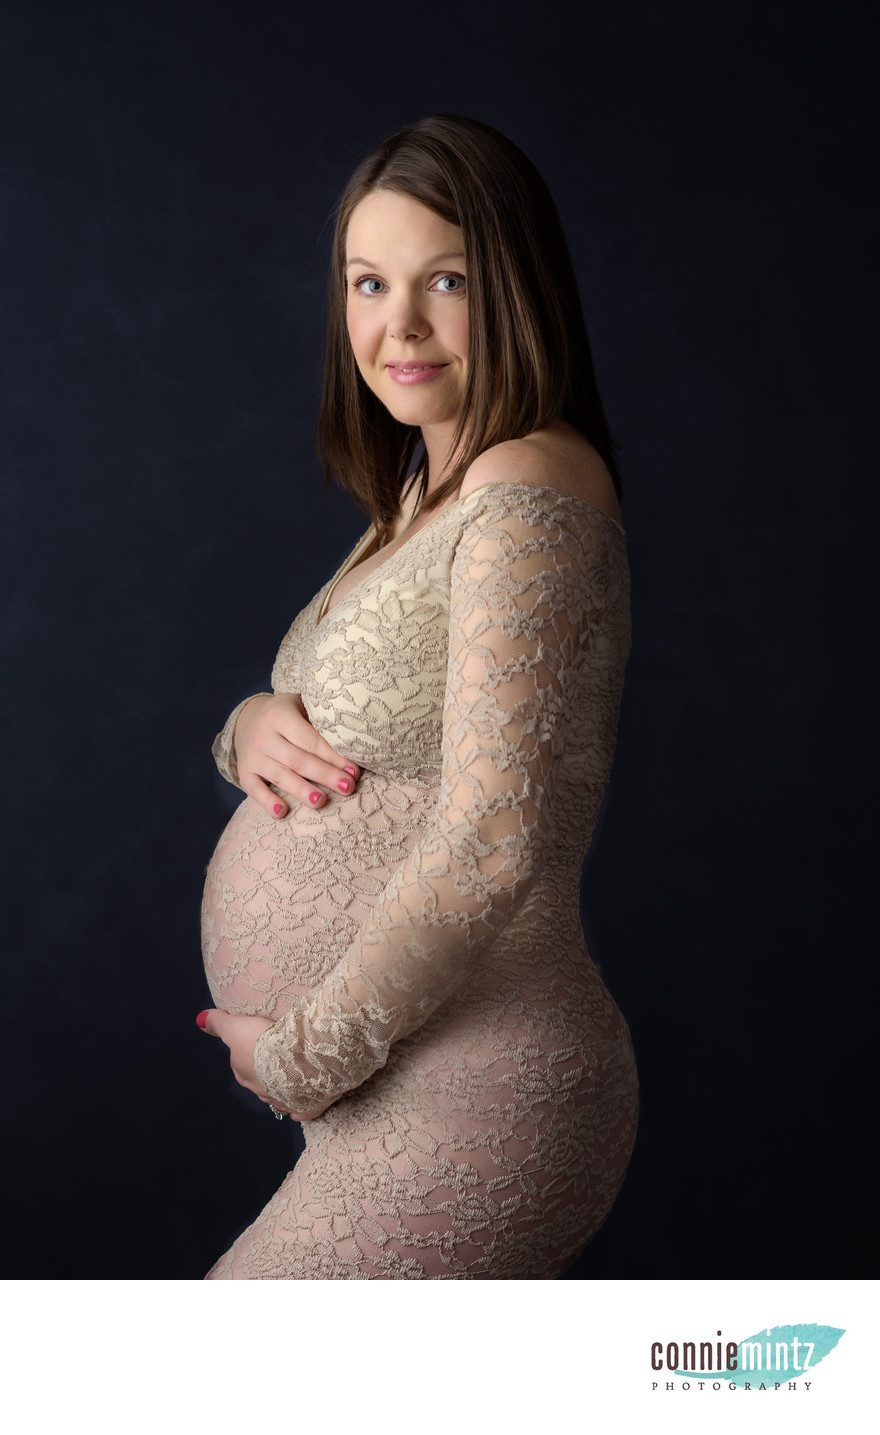 Southwest Washington Maternity Photographer